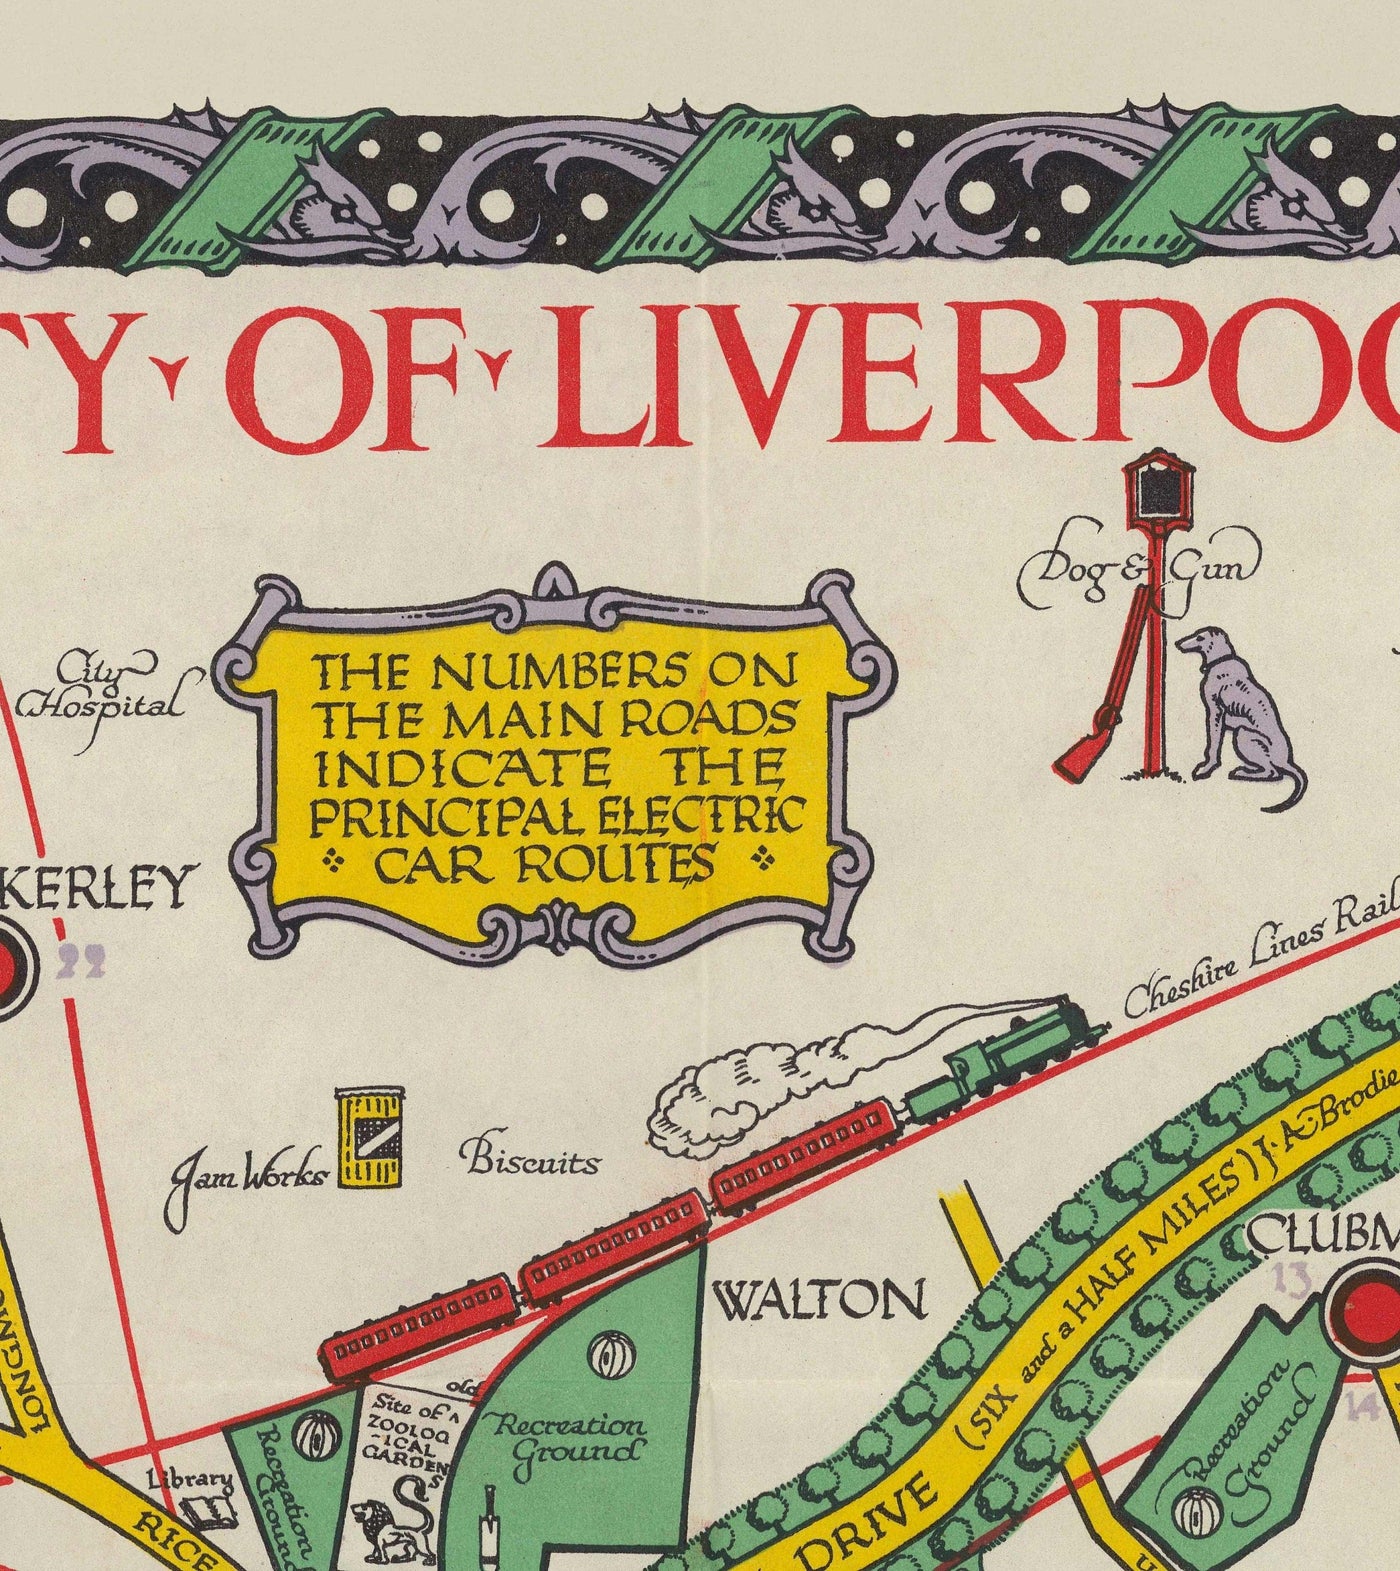 Ancienne carte de Liverpool, 1934 par GH Parry - Tableau de la ville pictoriale - Mersey, quais, parcs, bâtiments anciens